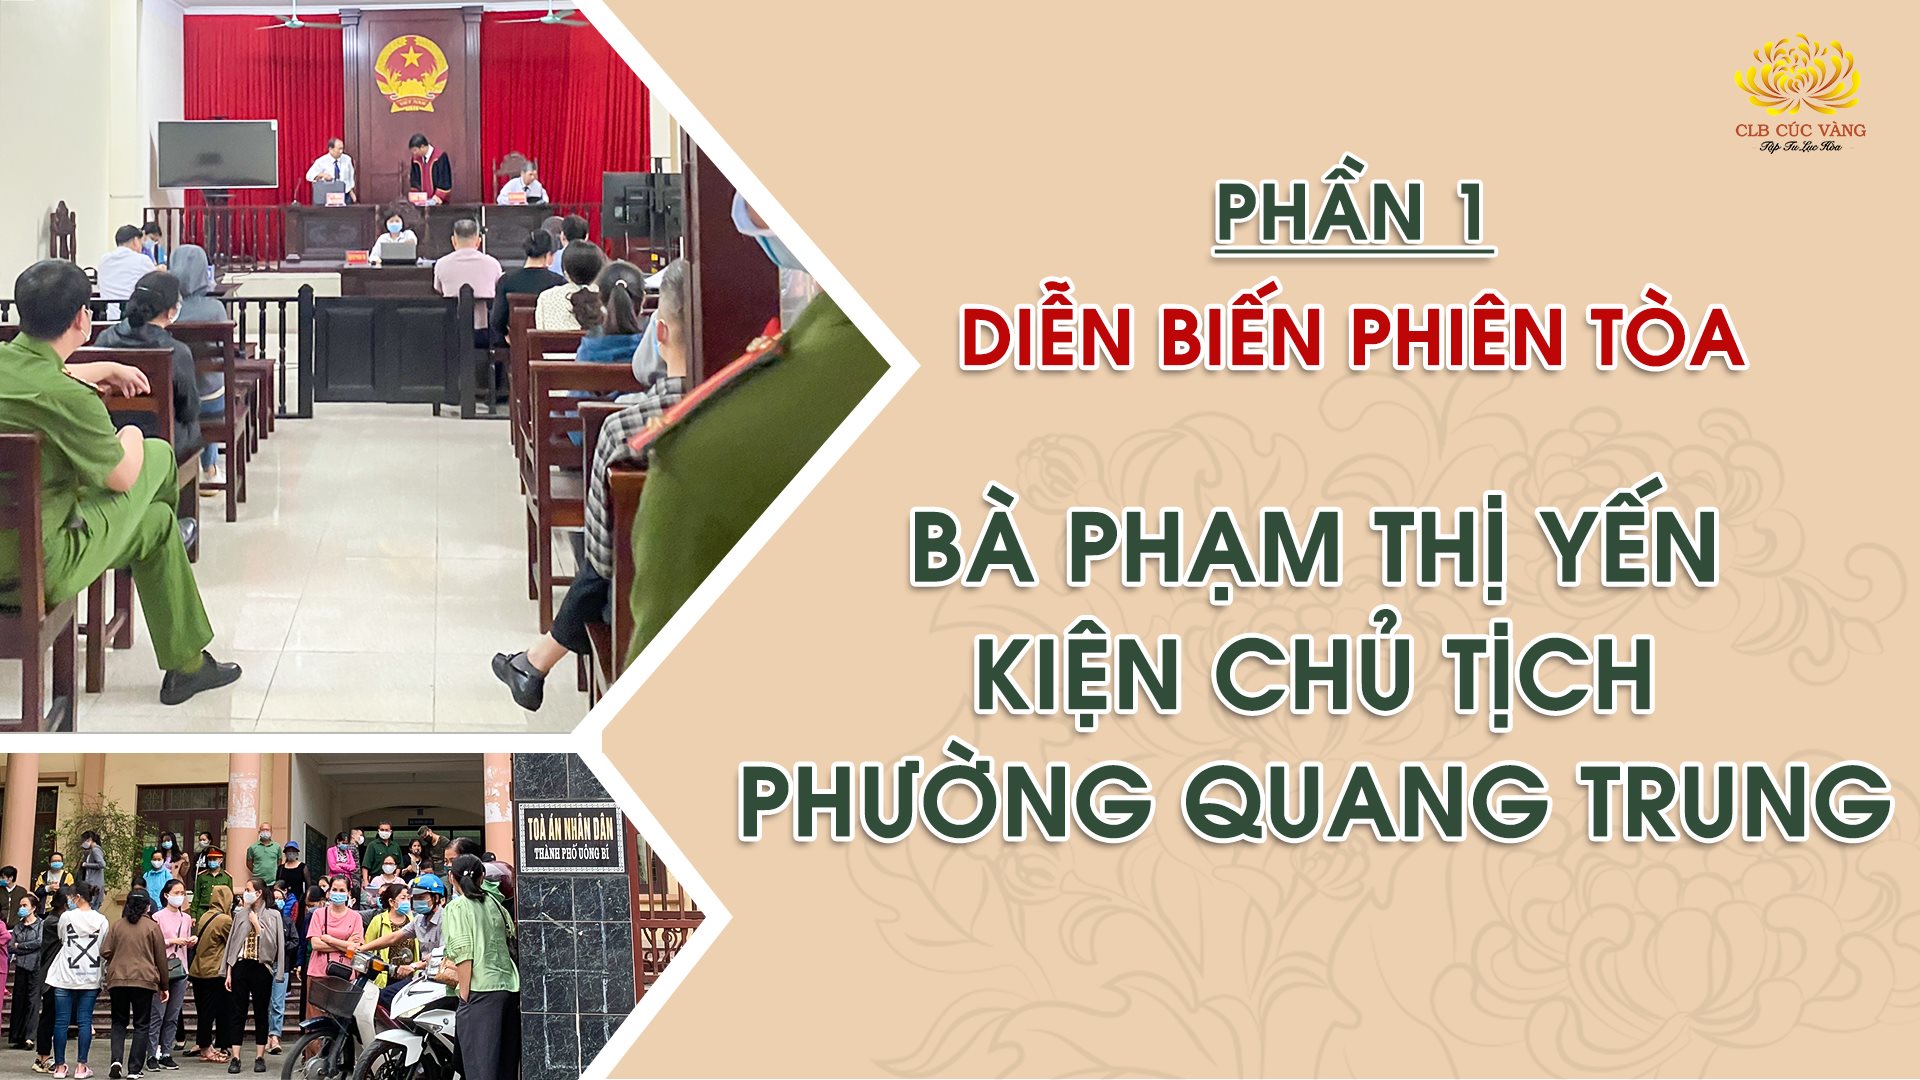 Phần 1: Tường thuật phiên tòa sơ thẩm: Bà Phạm Thị Yến kiện Chủ tịch UBND phường Quang Trung